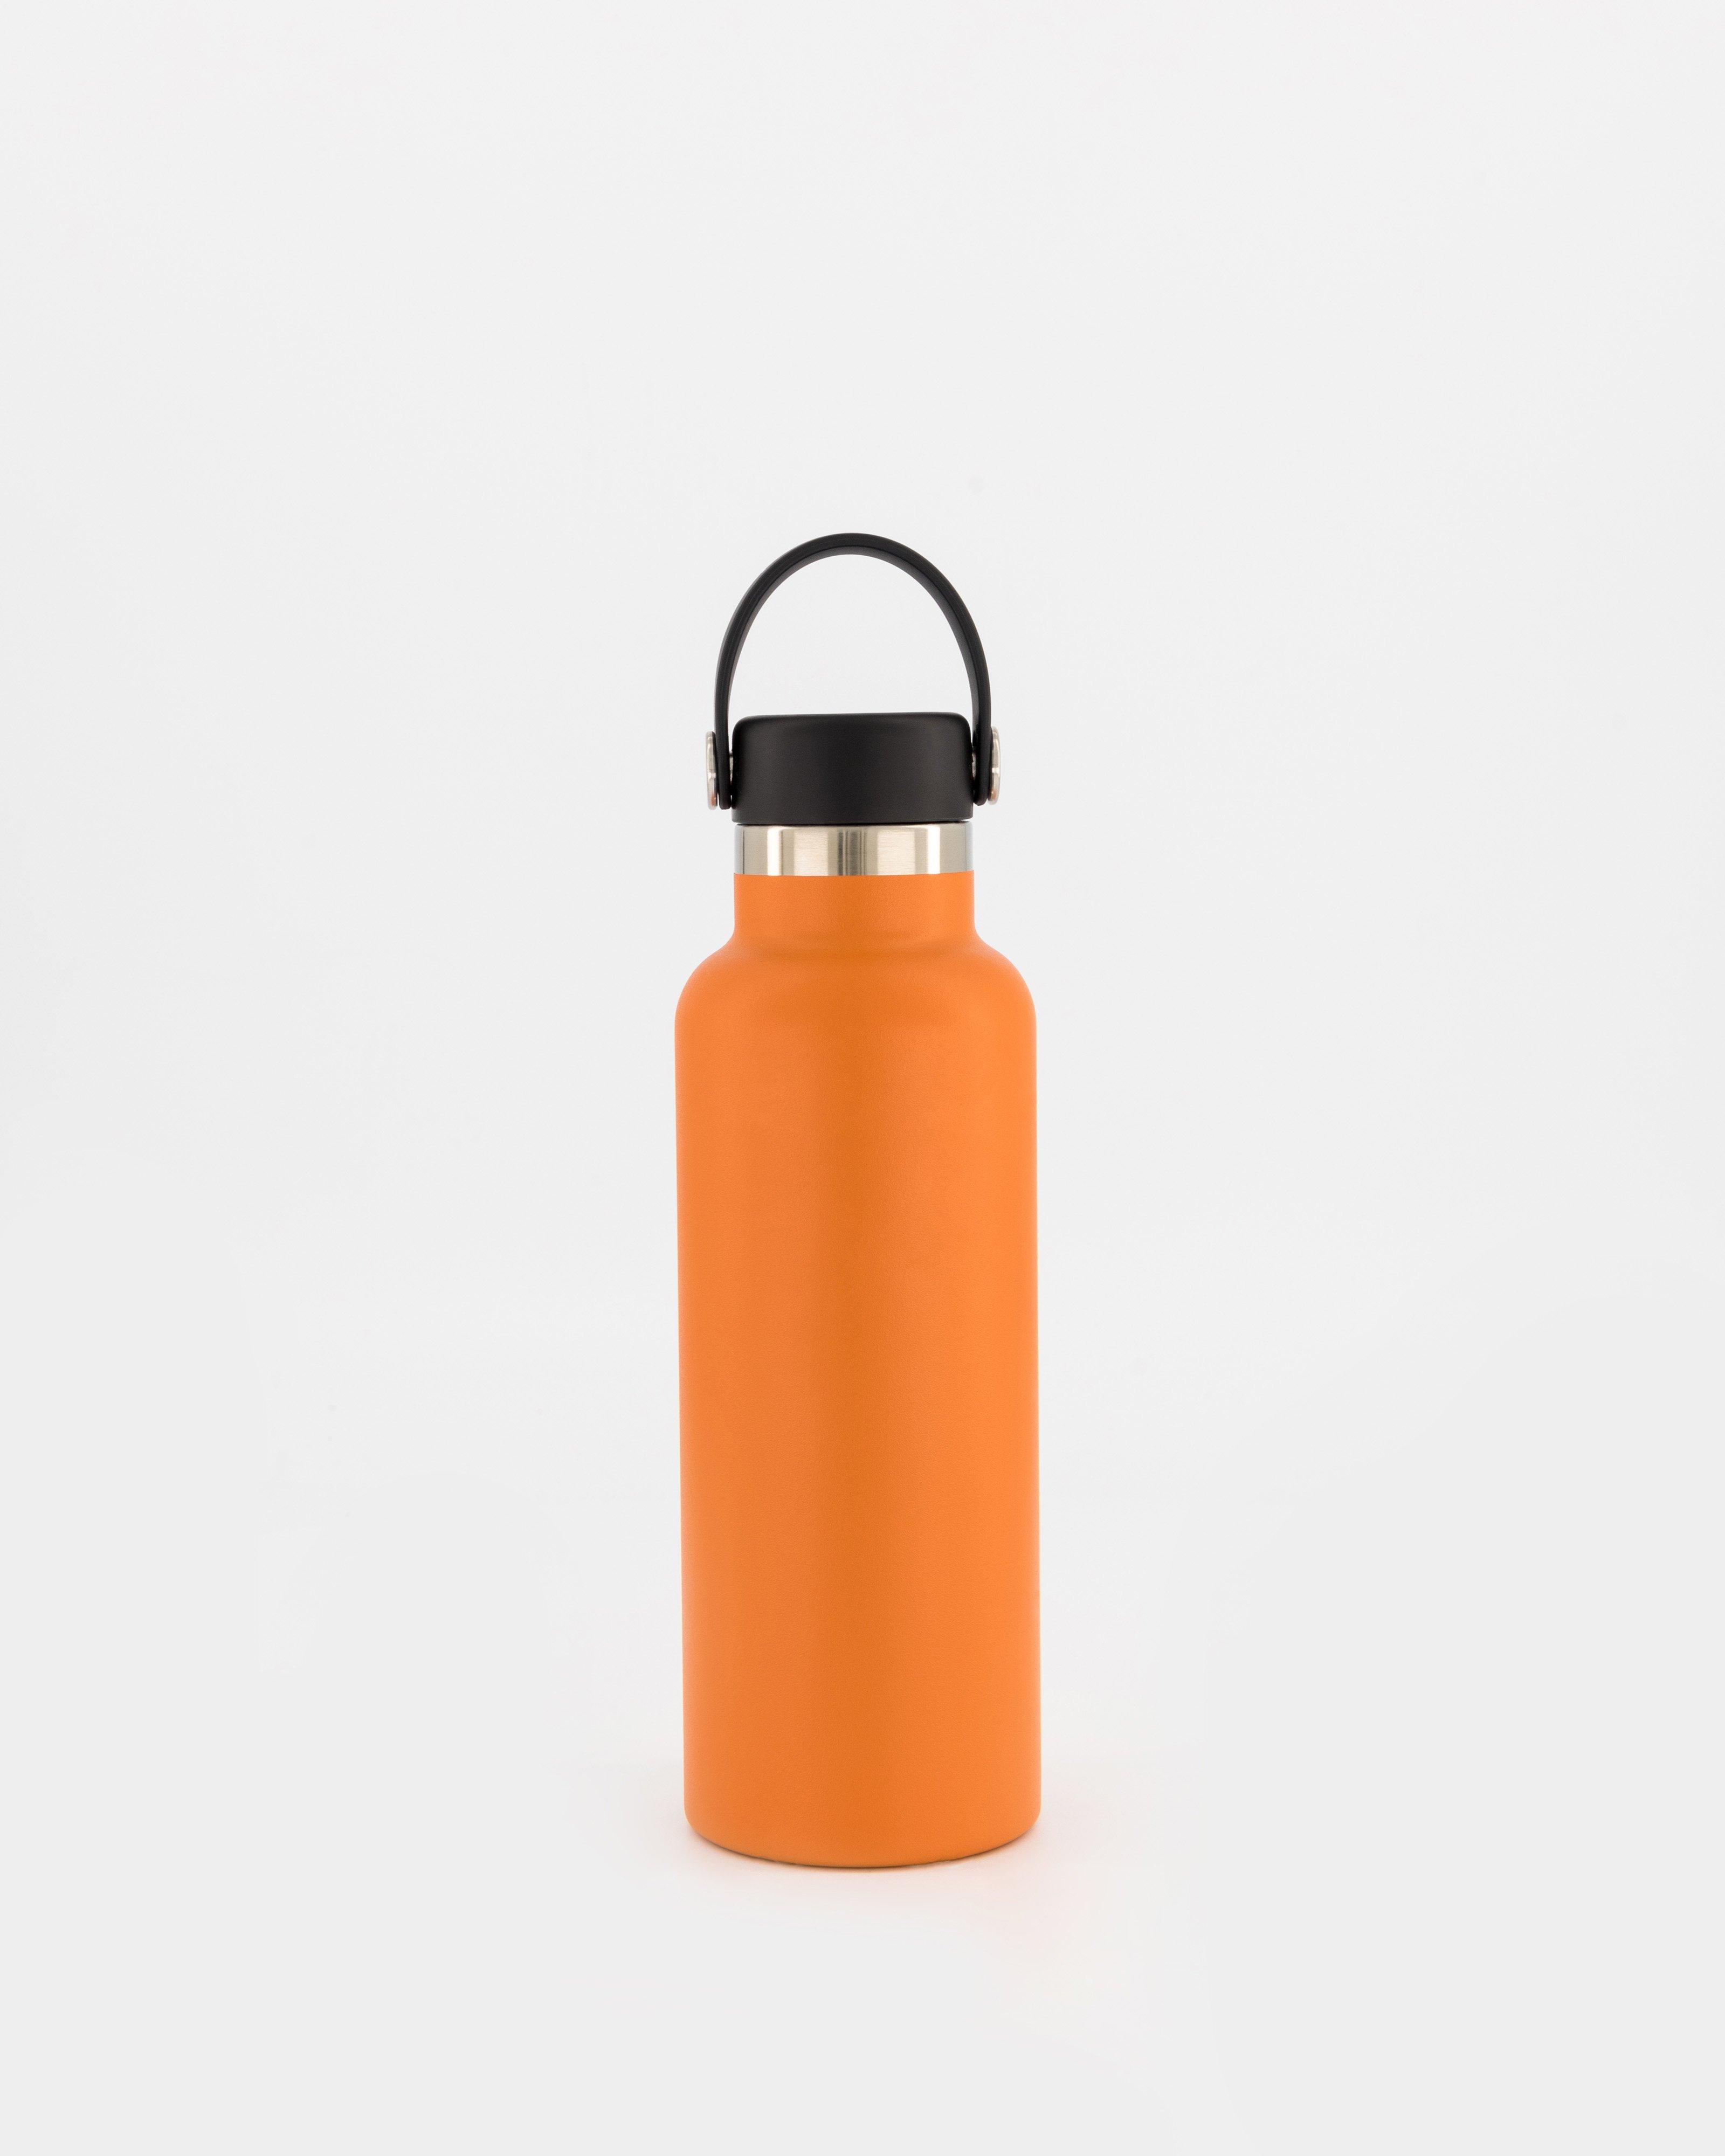 Hydro Flask 532ml Standard Mouth Bottle -  Orange